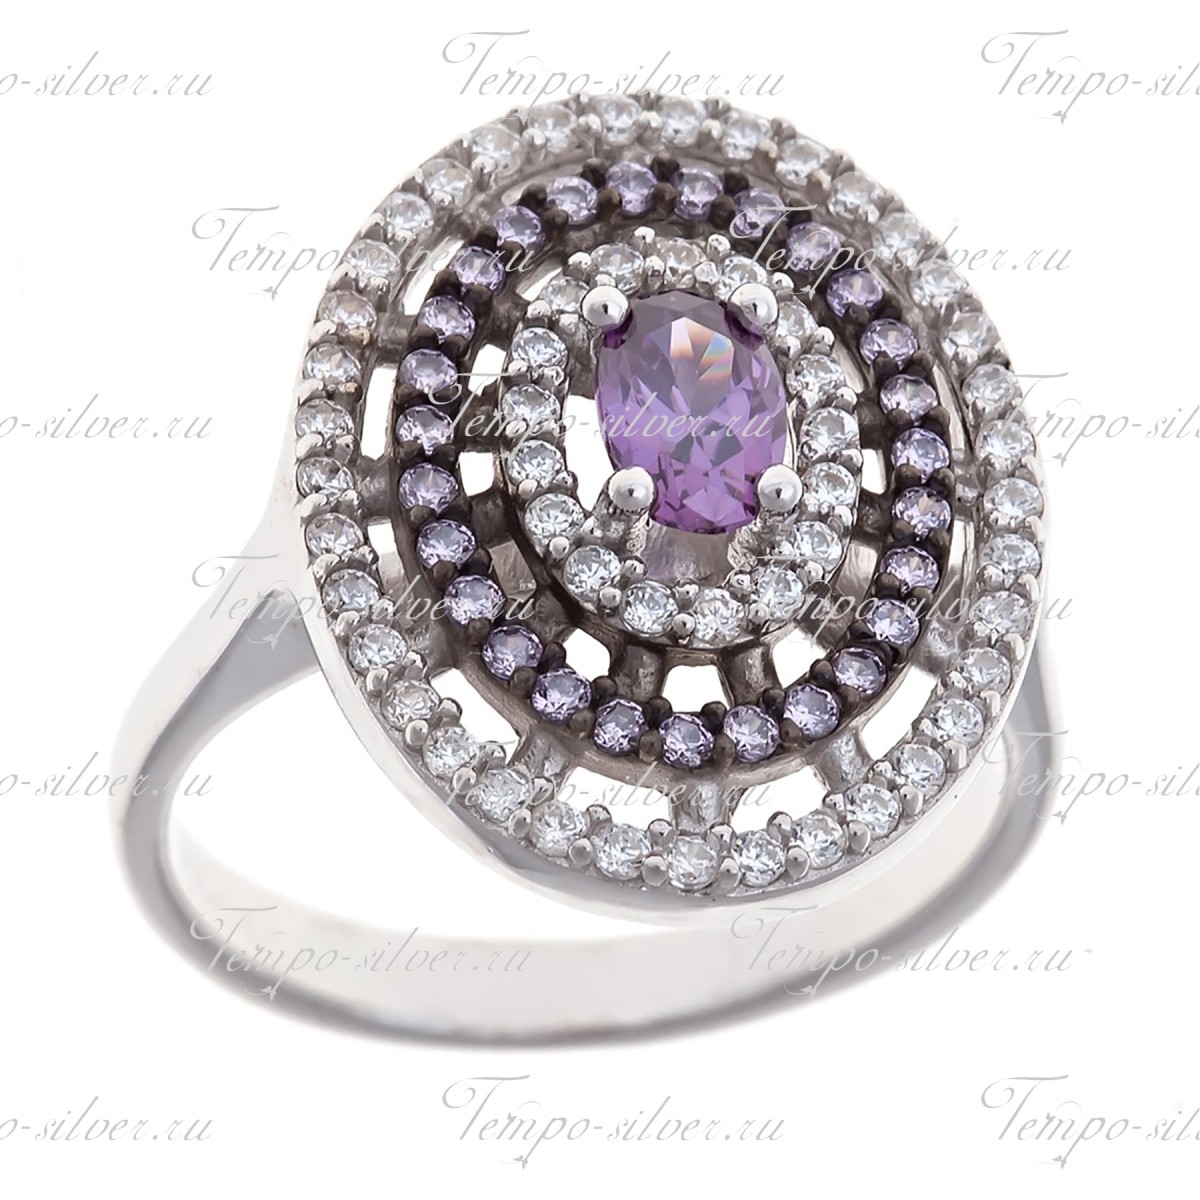 Кольцо серебряное овальное 3-х рядное с фиолетовыми камнями